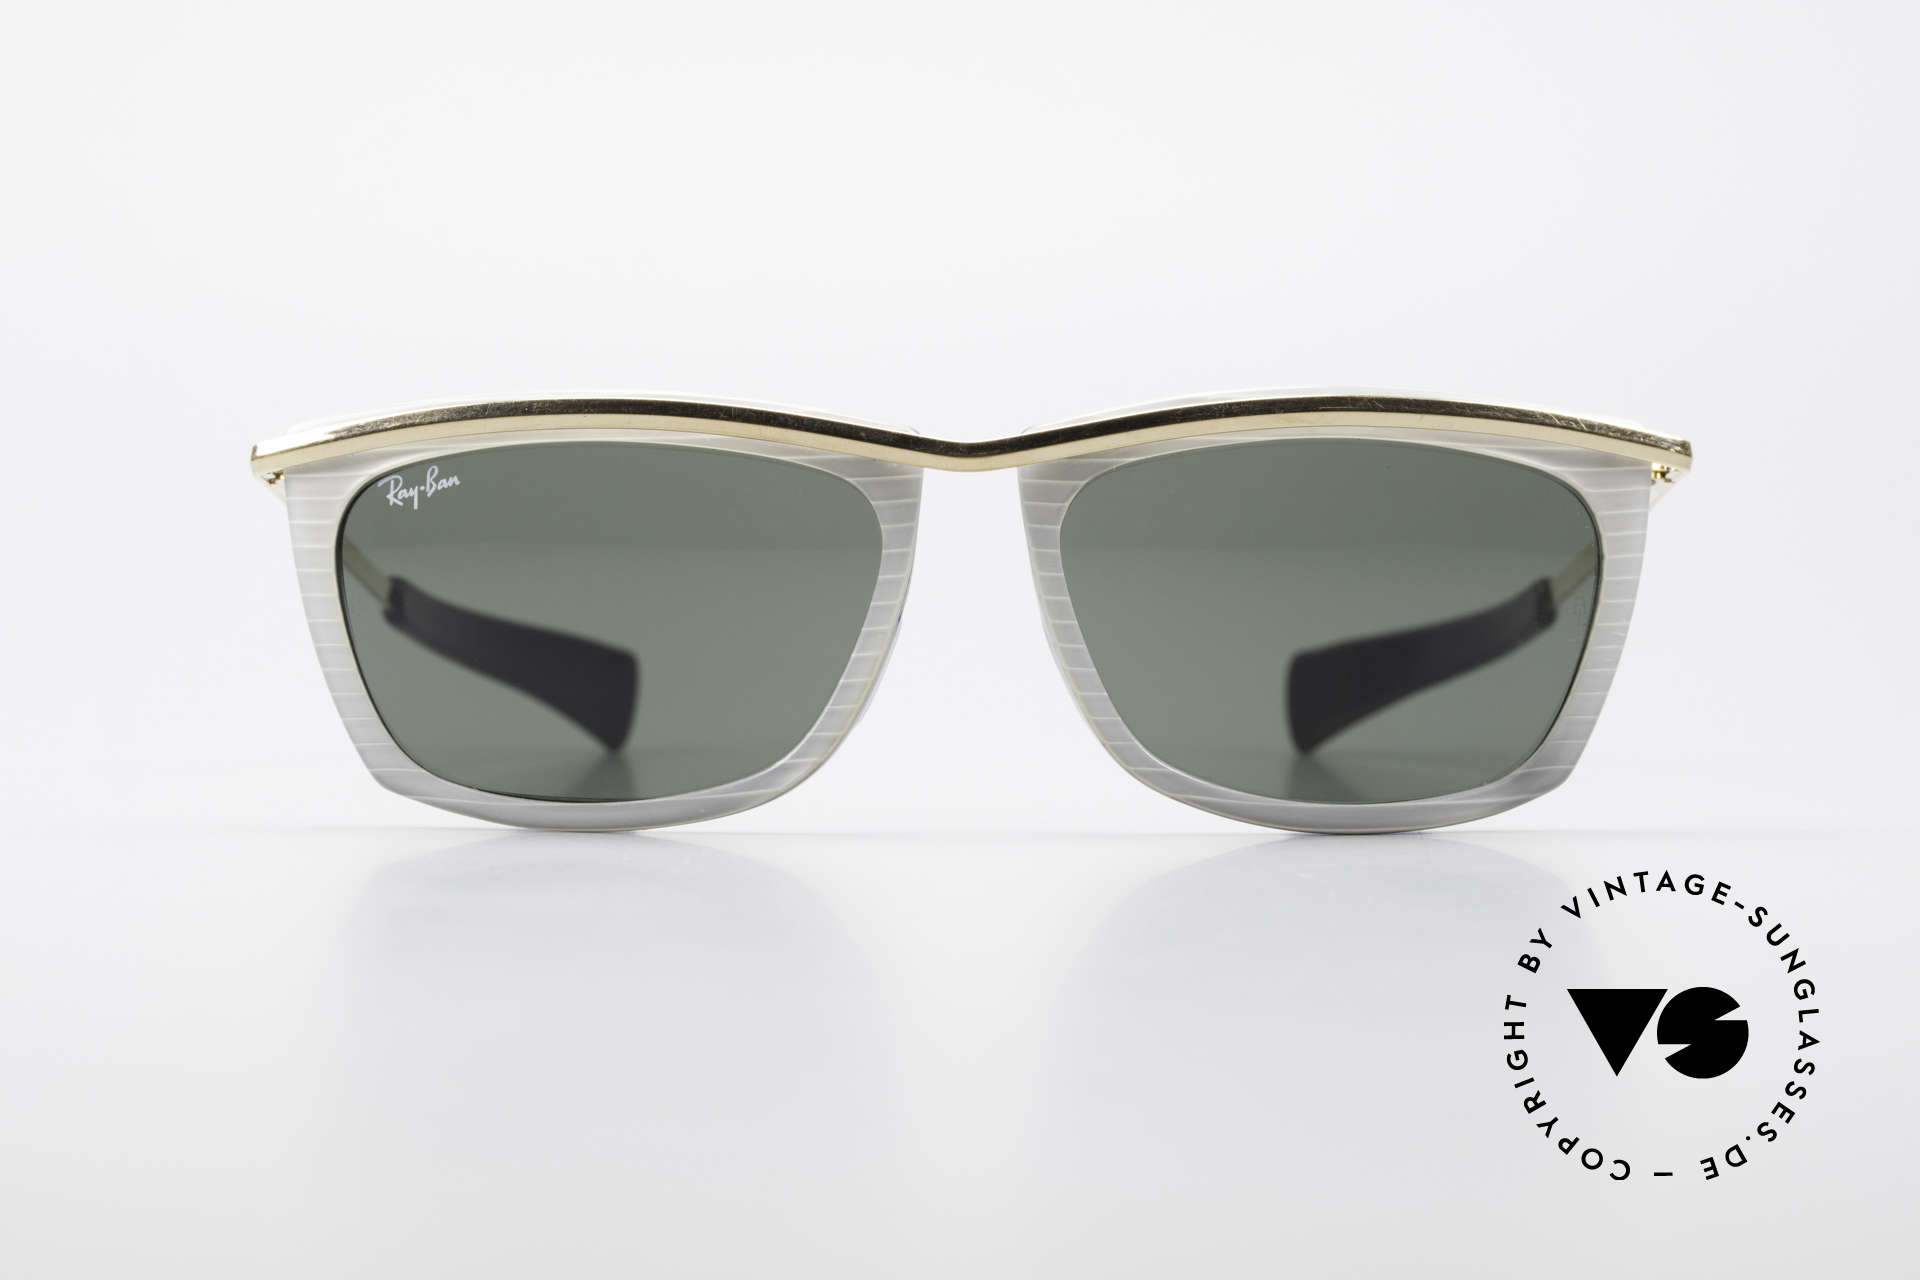 Ray Ban Olympian II B&L Ray-Ban Sonnenbrille USA, alte Ray Ban Designersonnenbrille aus den 80ern, Passend für Herren und Damen